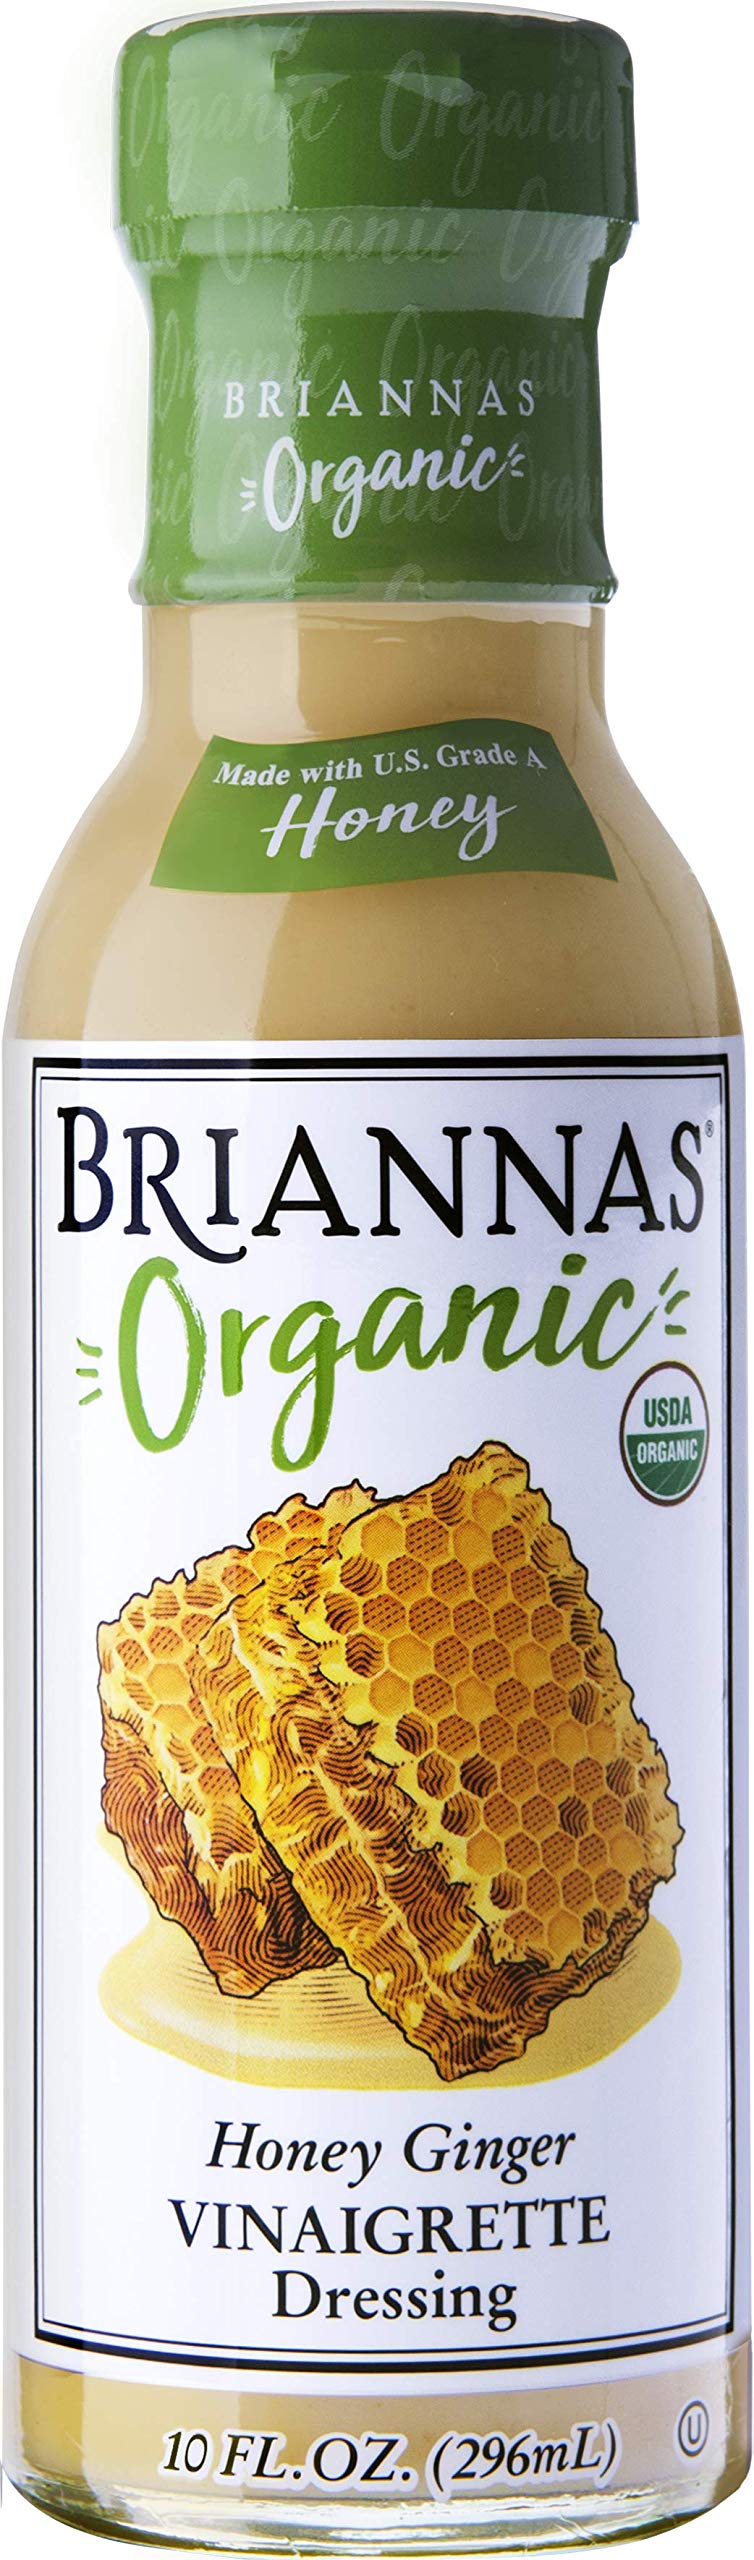 Briannas Organic Honey Ginger Vinaigrette Dressing, 10 FZ